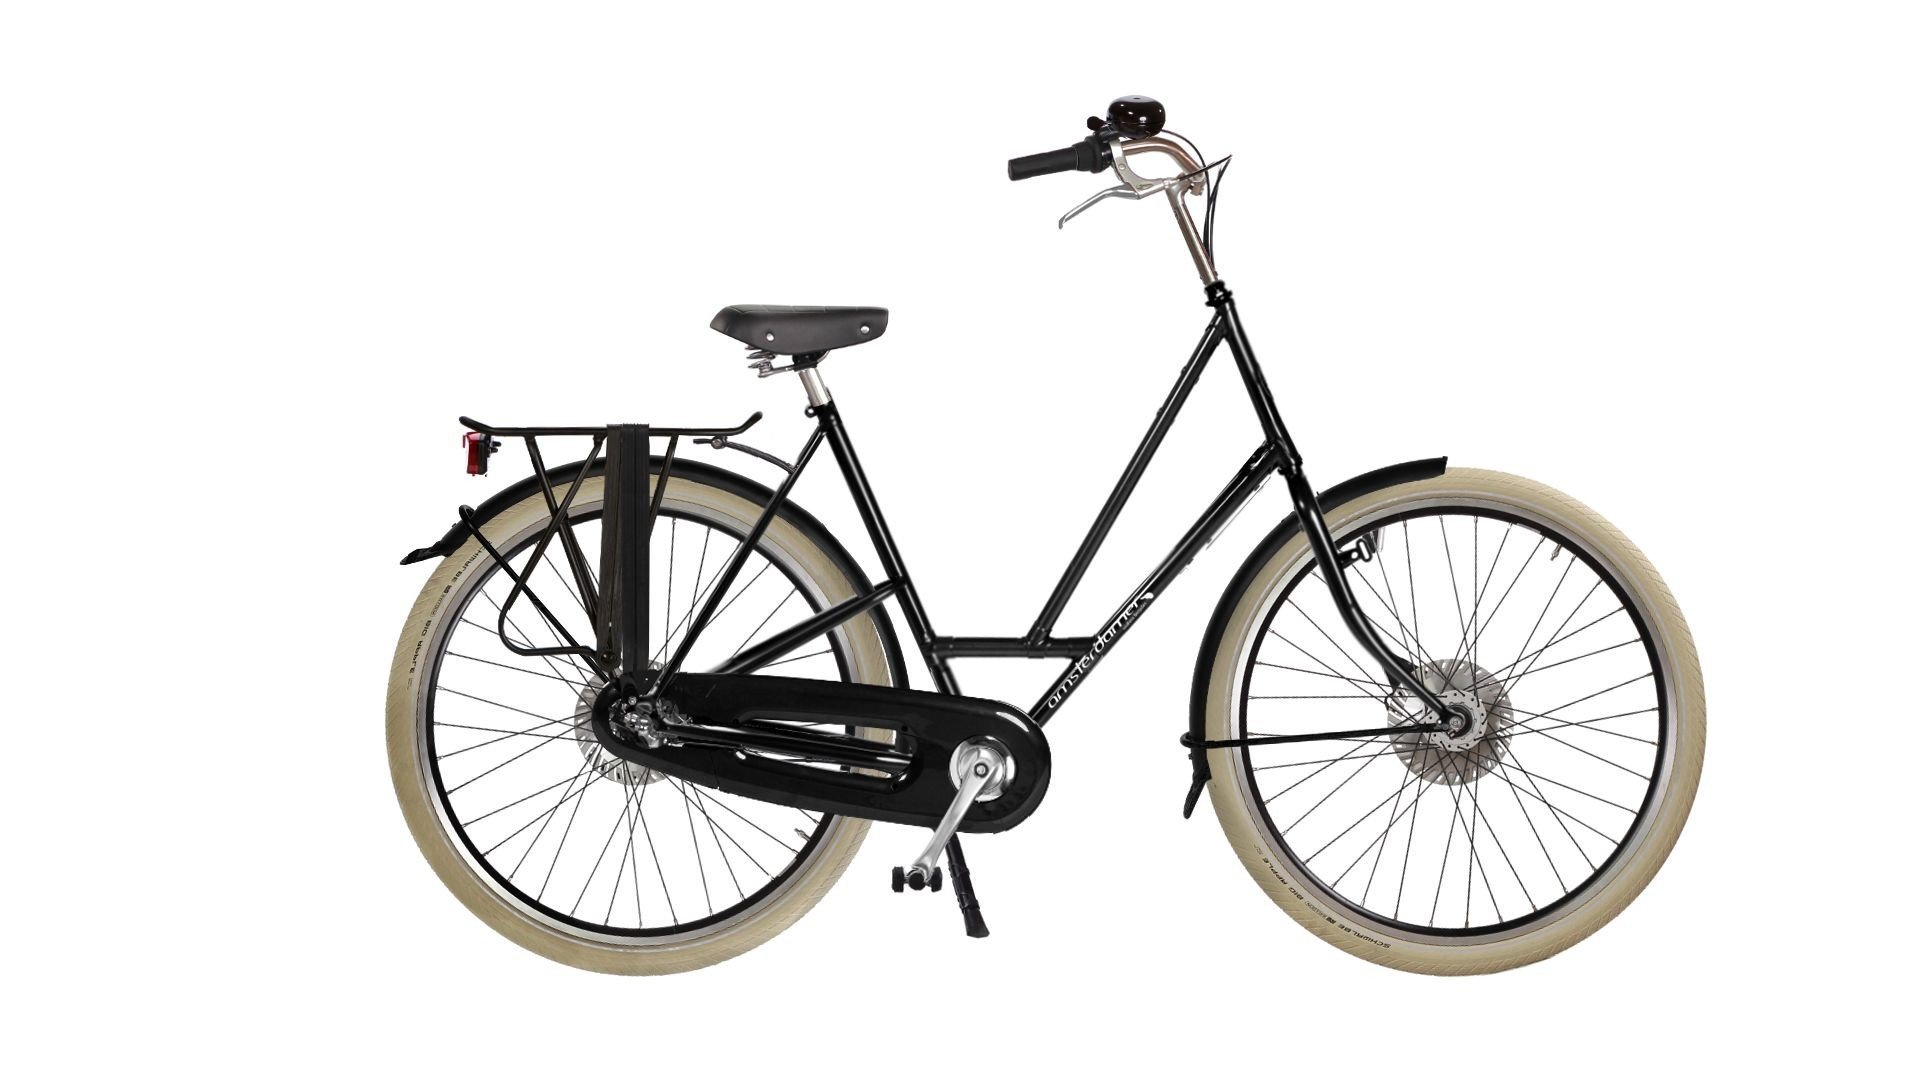 Configurateur du vélo hollandais City Zen Premium